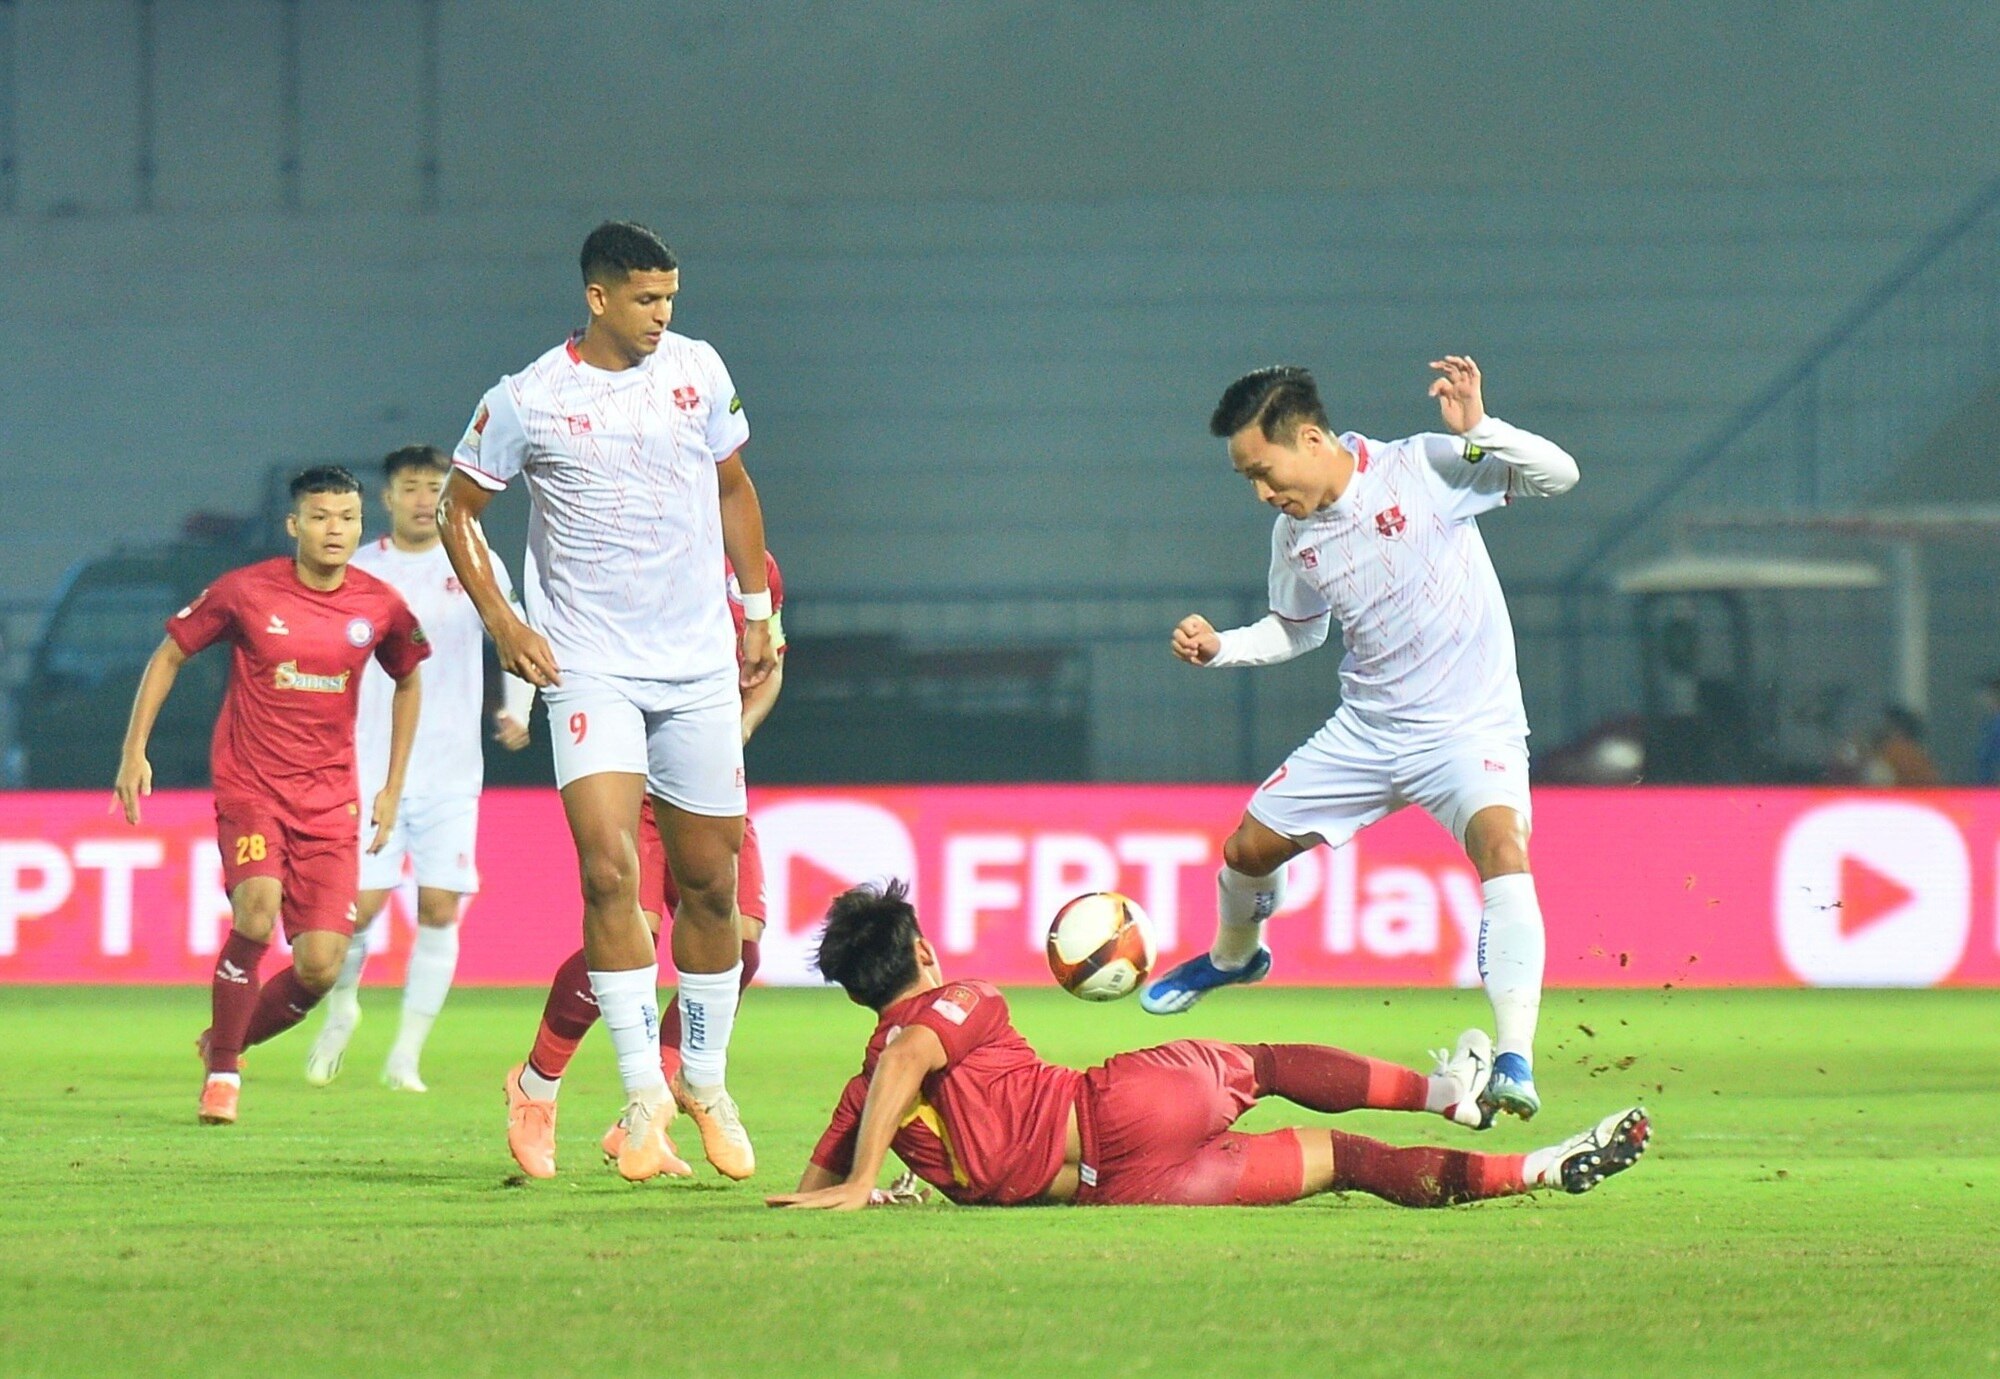 V-League: CLB Khánh Hòa chơi hay, đội Hải Phòng ngược dòng ấn tượng để vào tốp 4 - Ảnh 1.